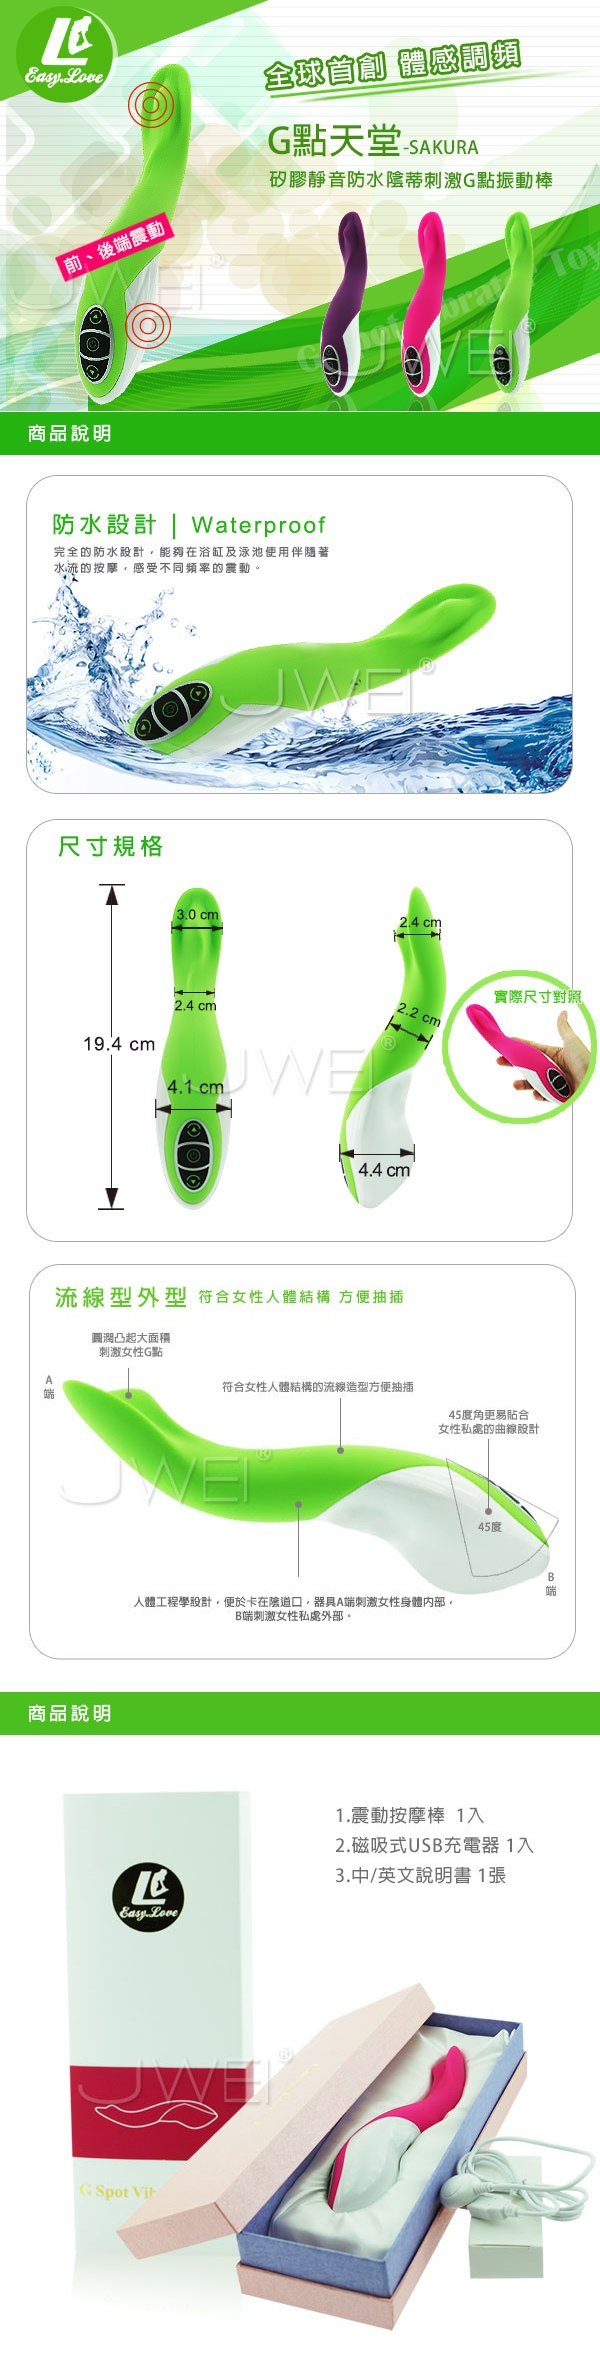 香港簡愛EasyLove‧G點天堂 體感震動靜音防水充電式按摩棒(綠)